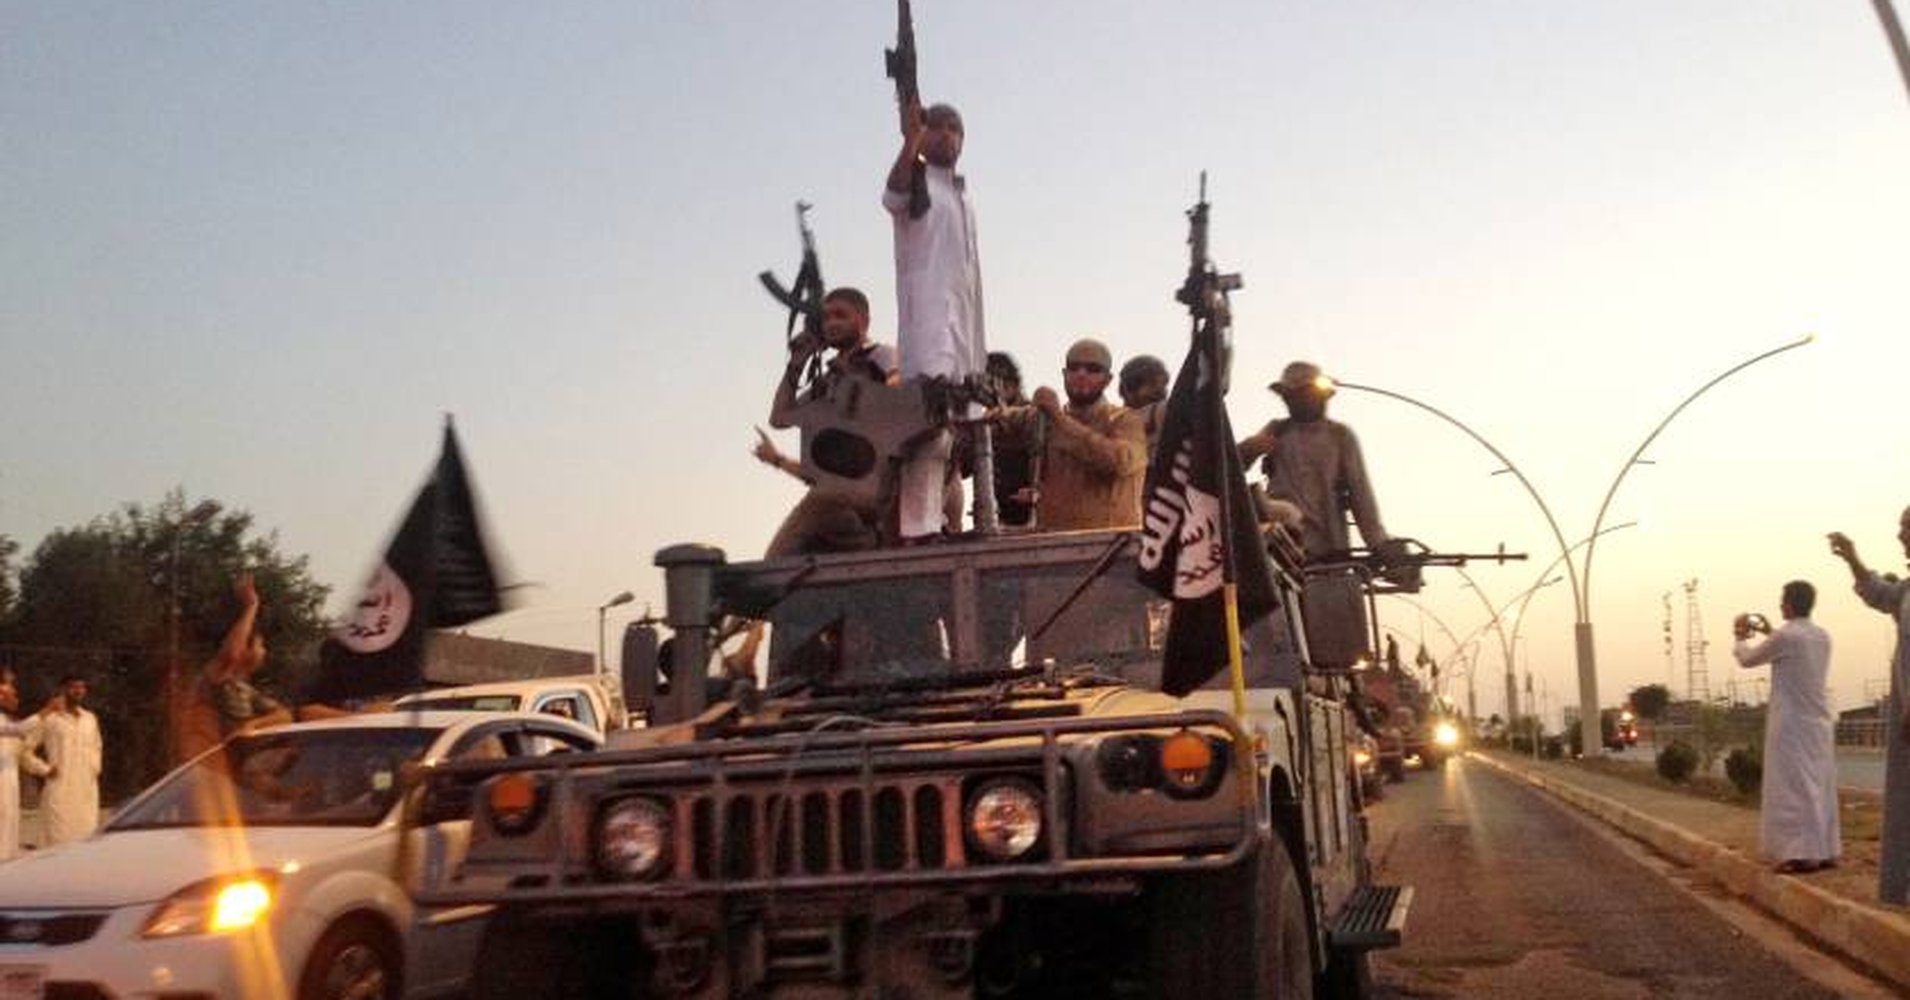 Боевики ИГ в Ливии обезглавливают мирных жителей за "колдовство"